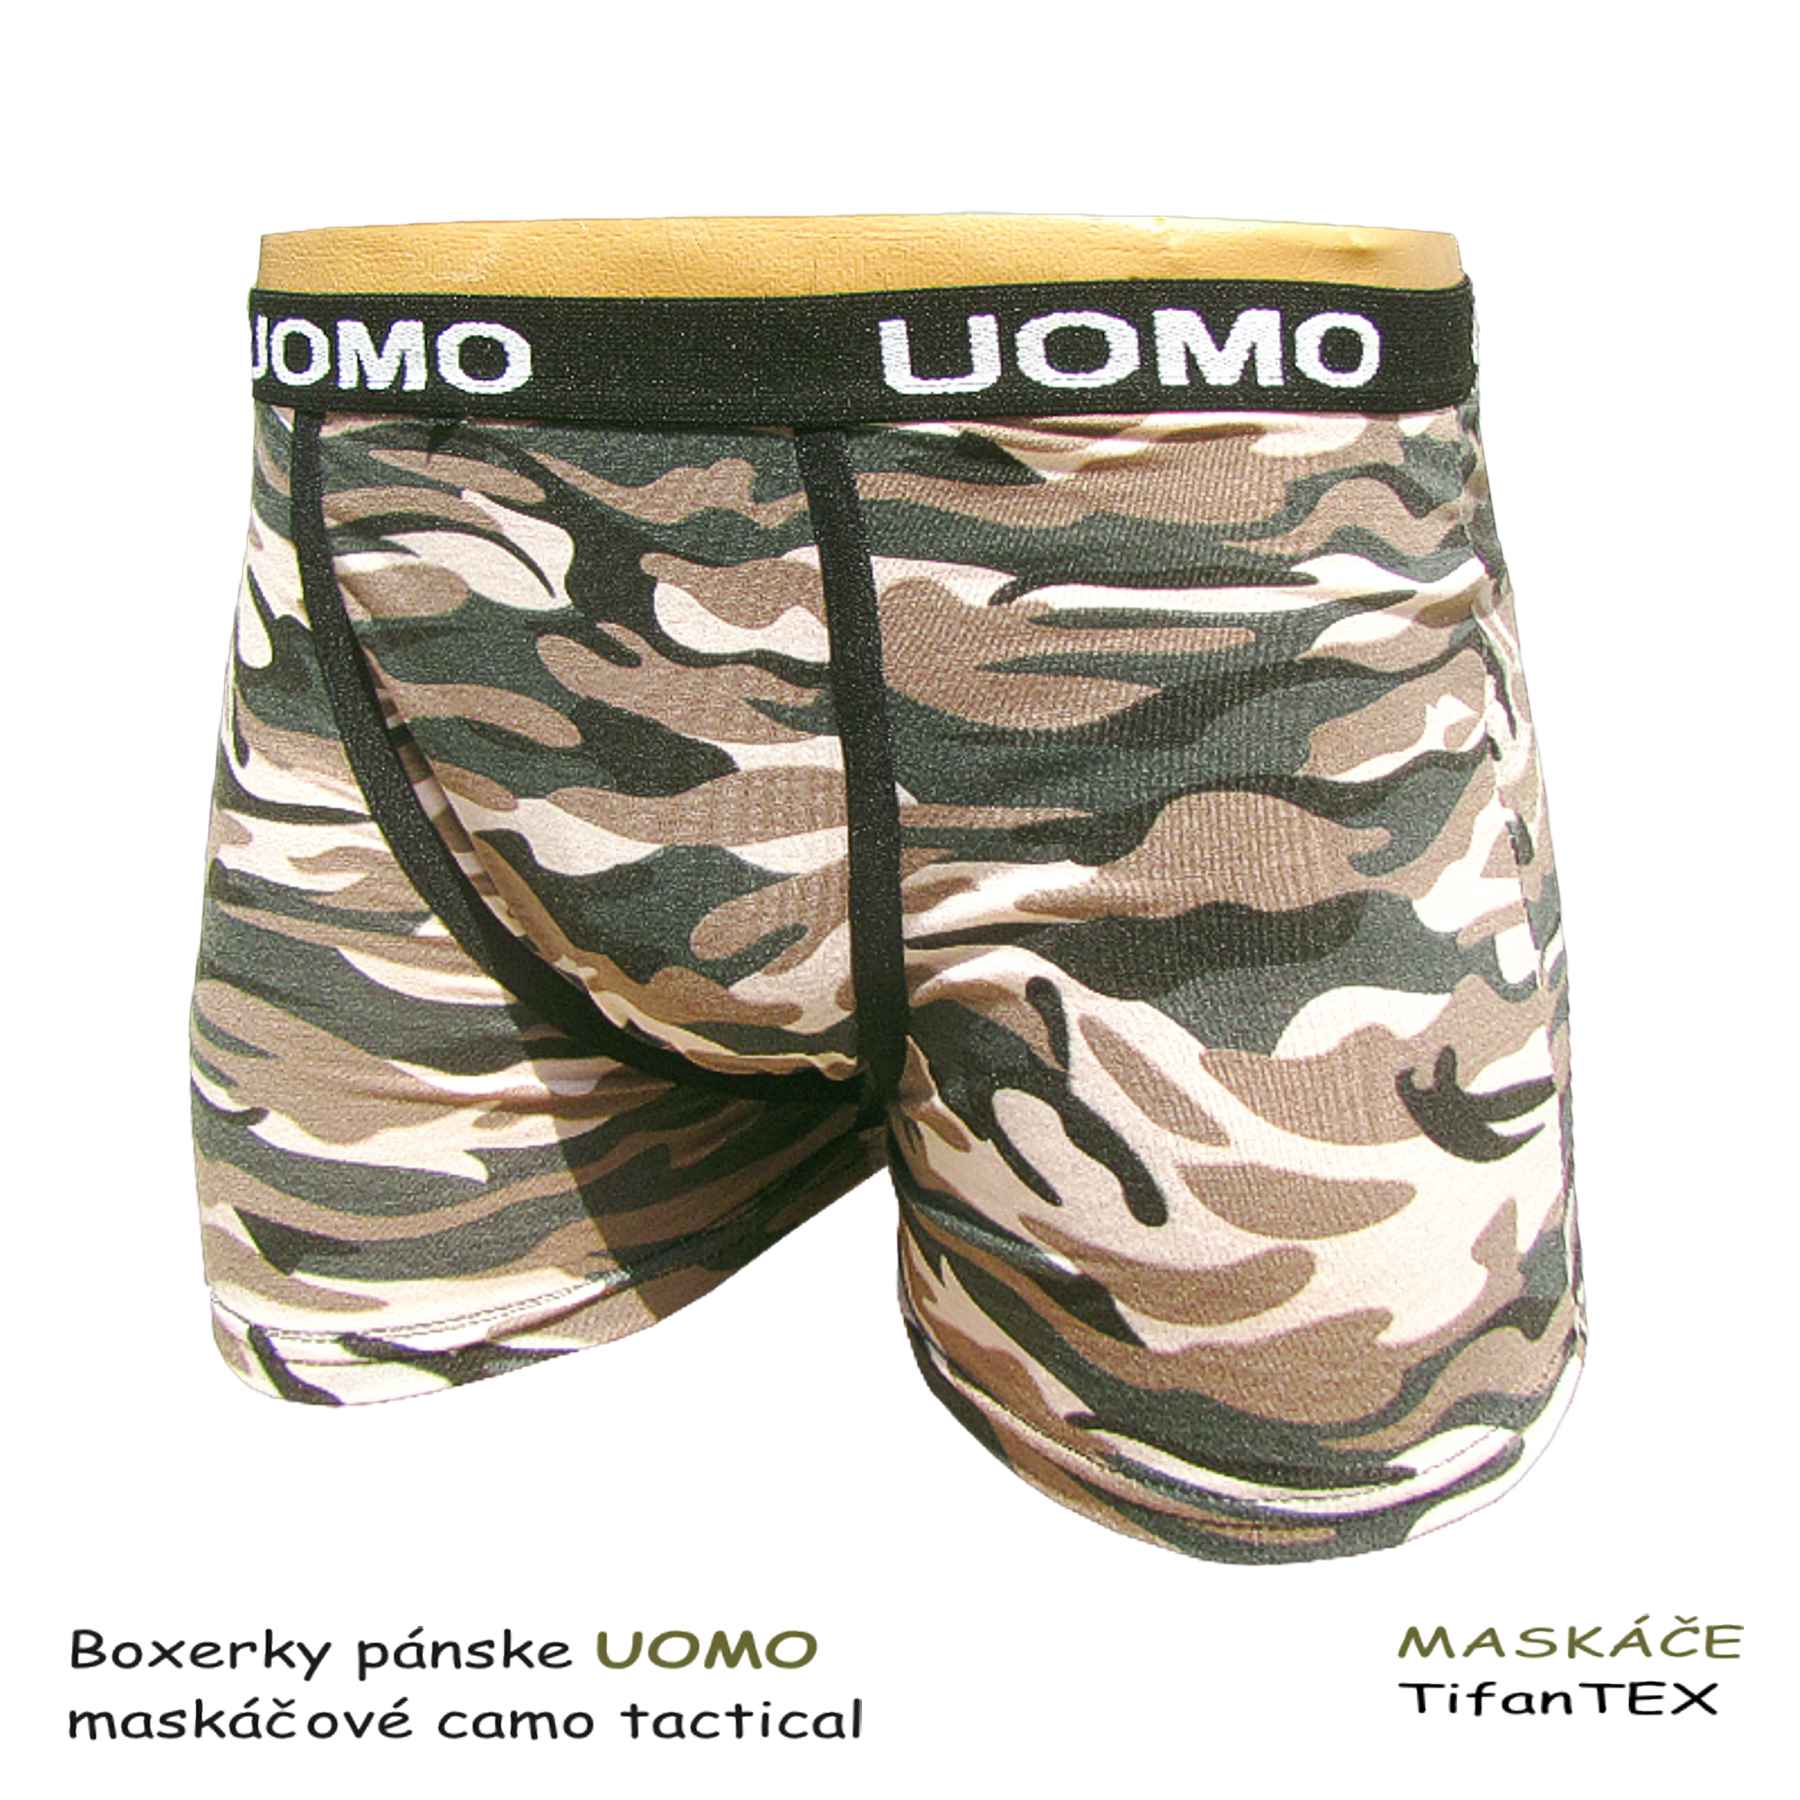 Maskáčové boxerky pánske UOMO Camo tactical, odevy Tifantex